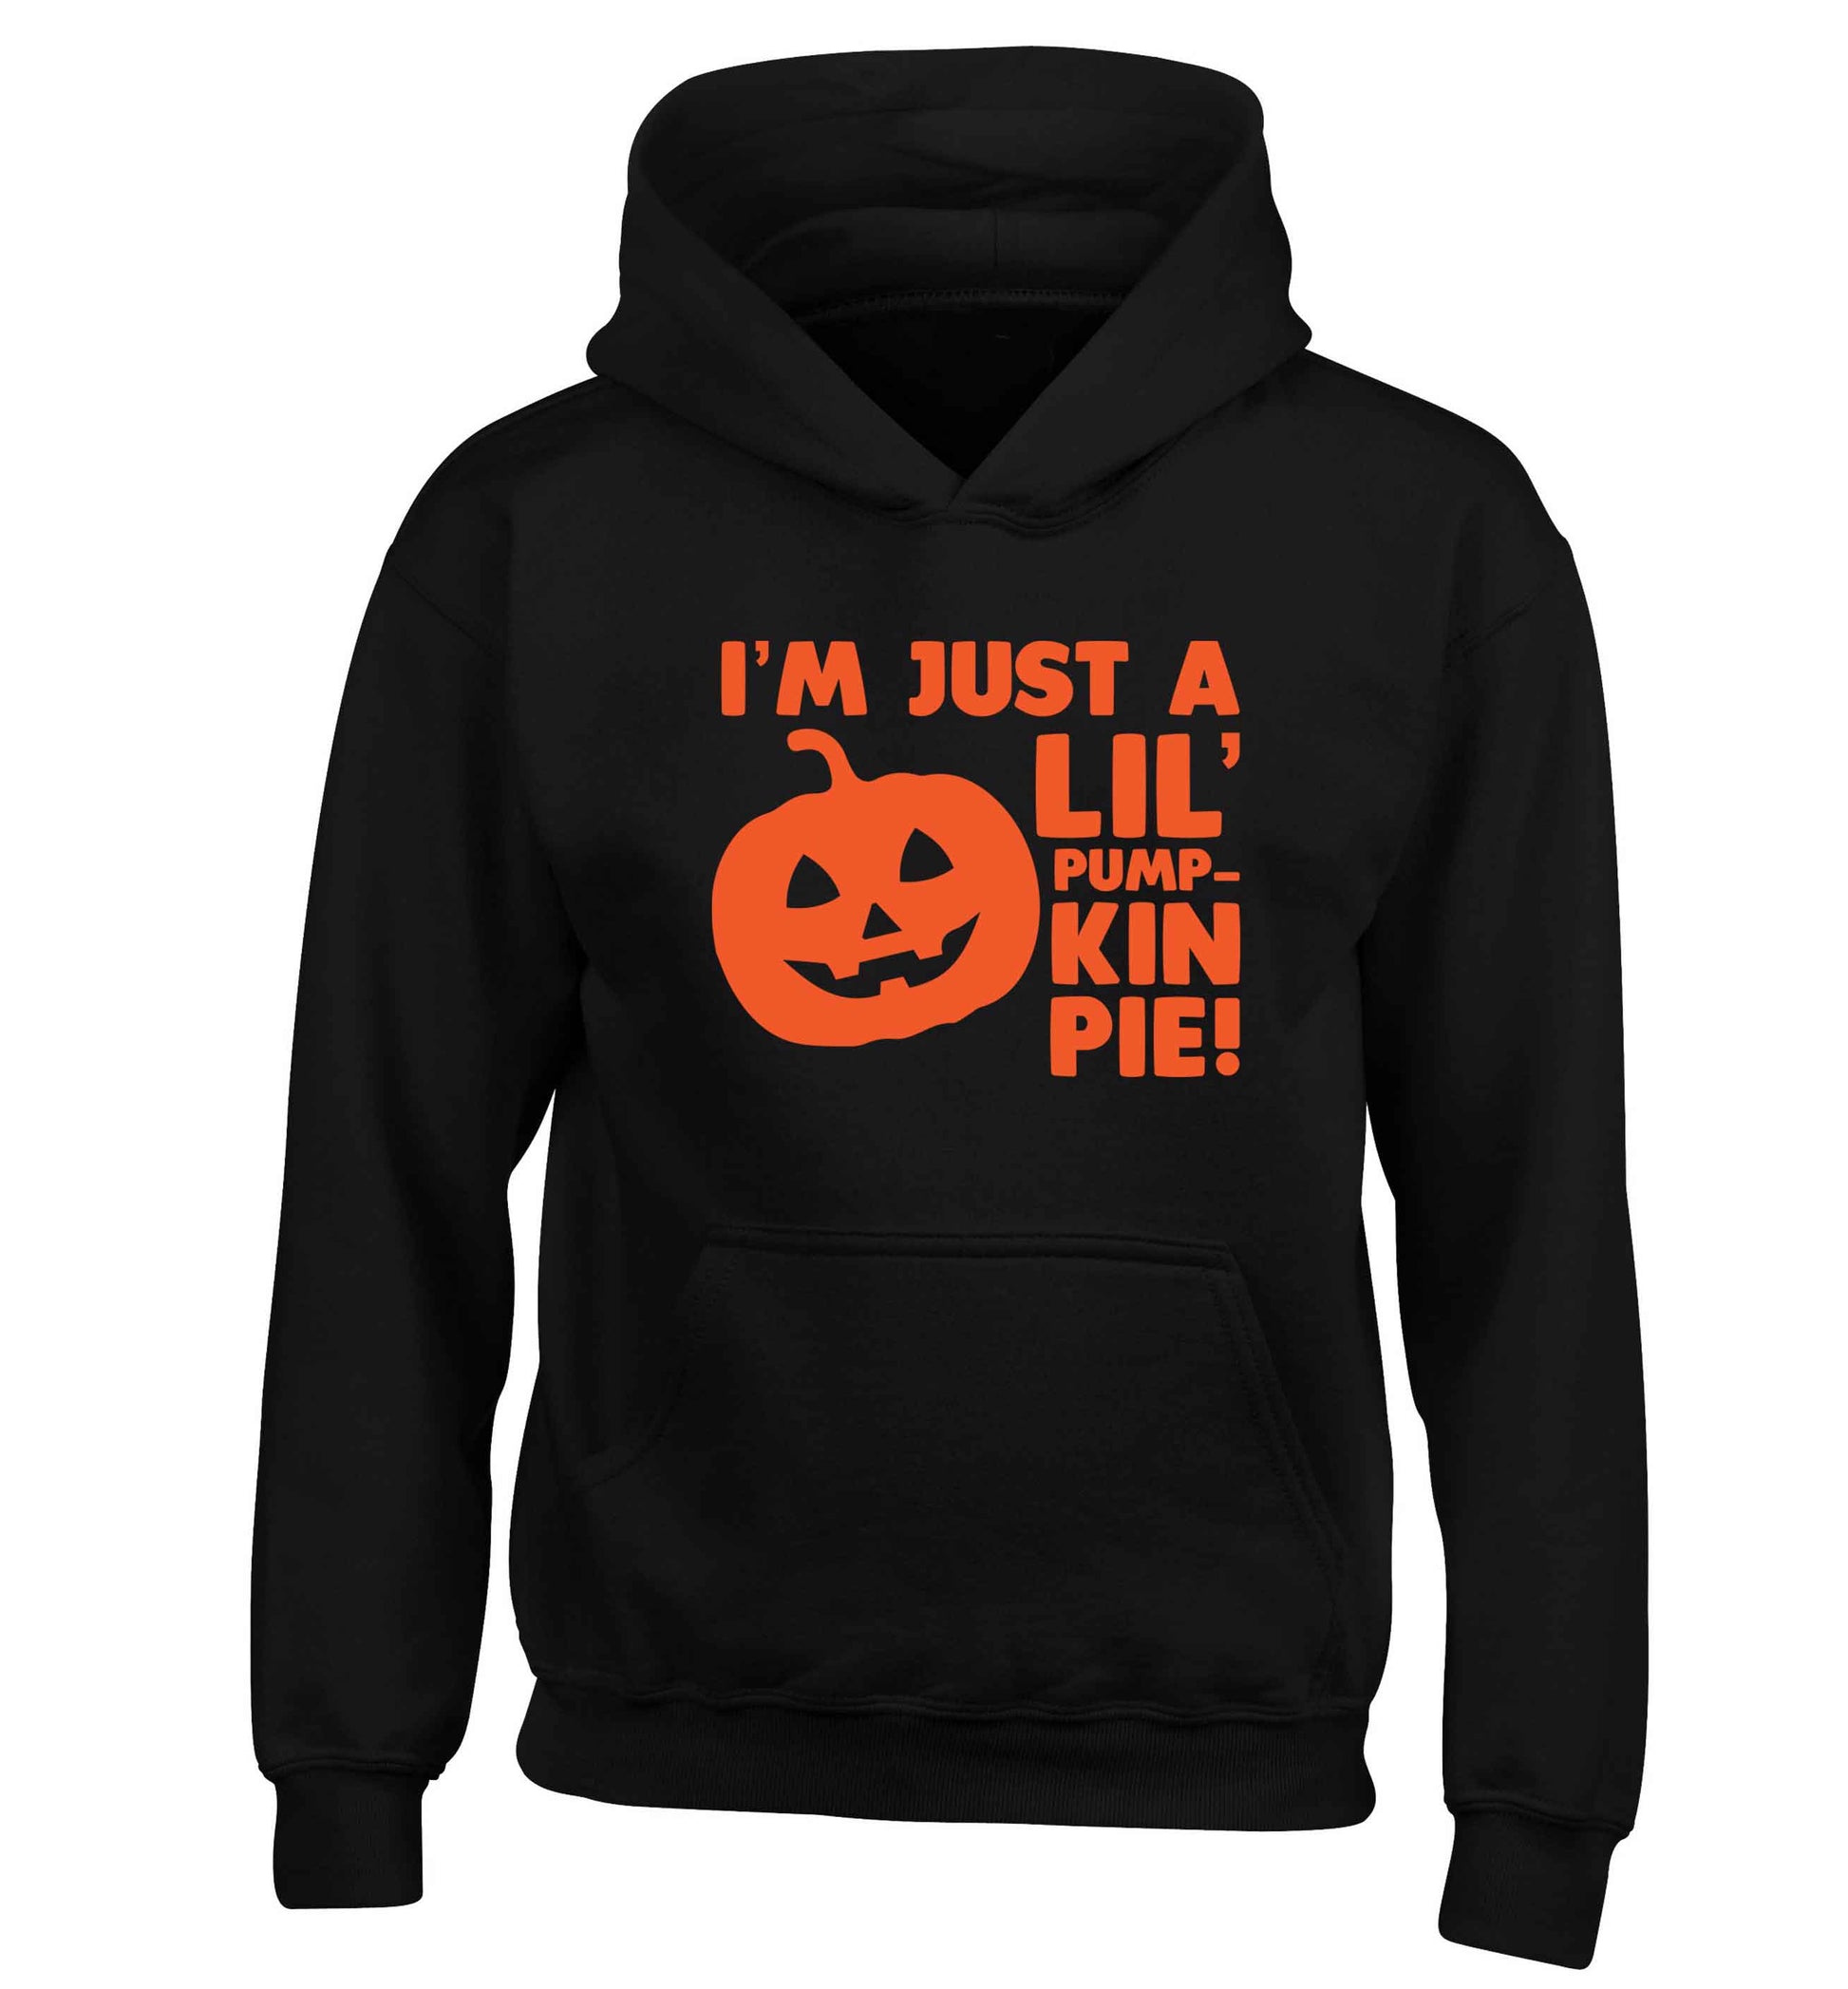 I'm just a lil' pumpkin pie children's black hoodie 12-13 Years